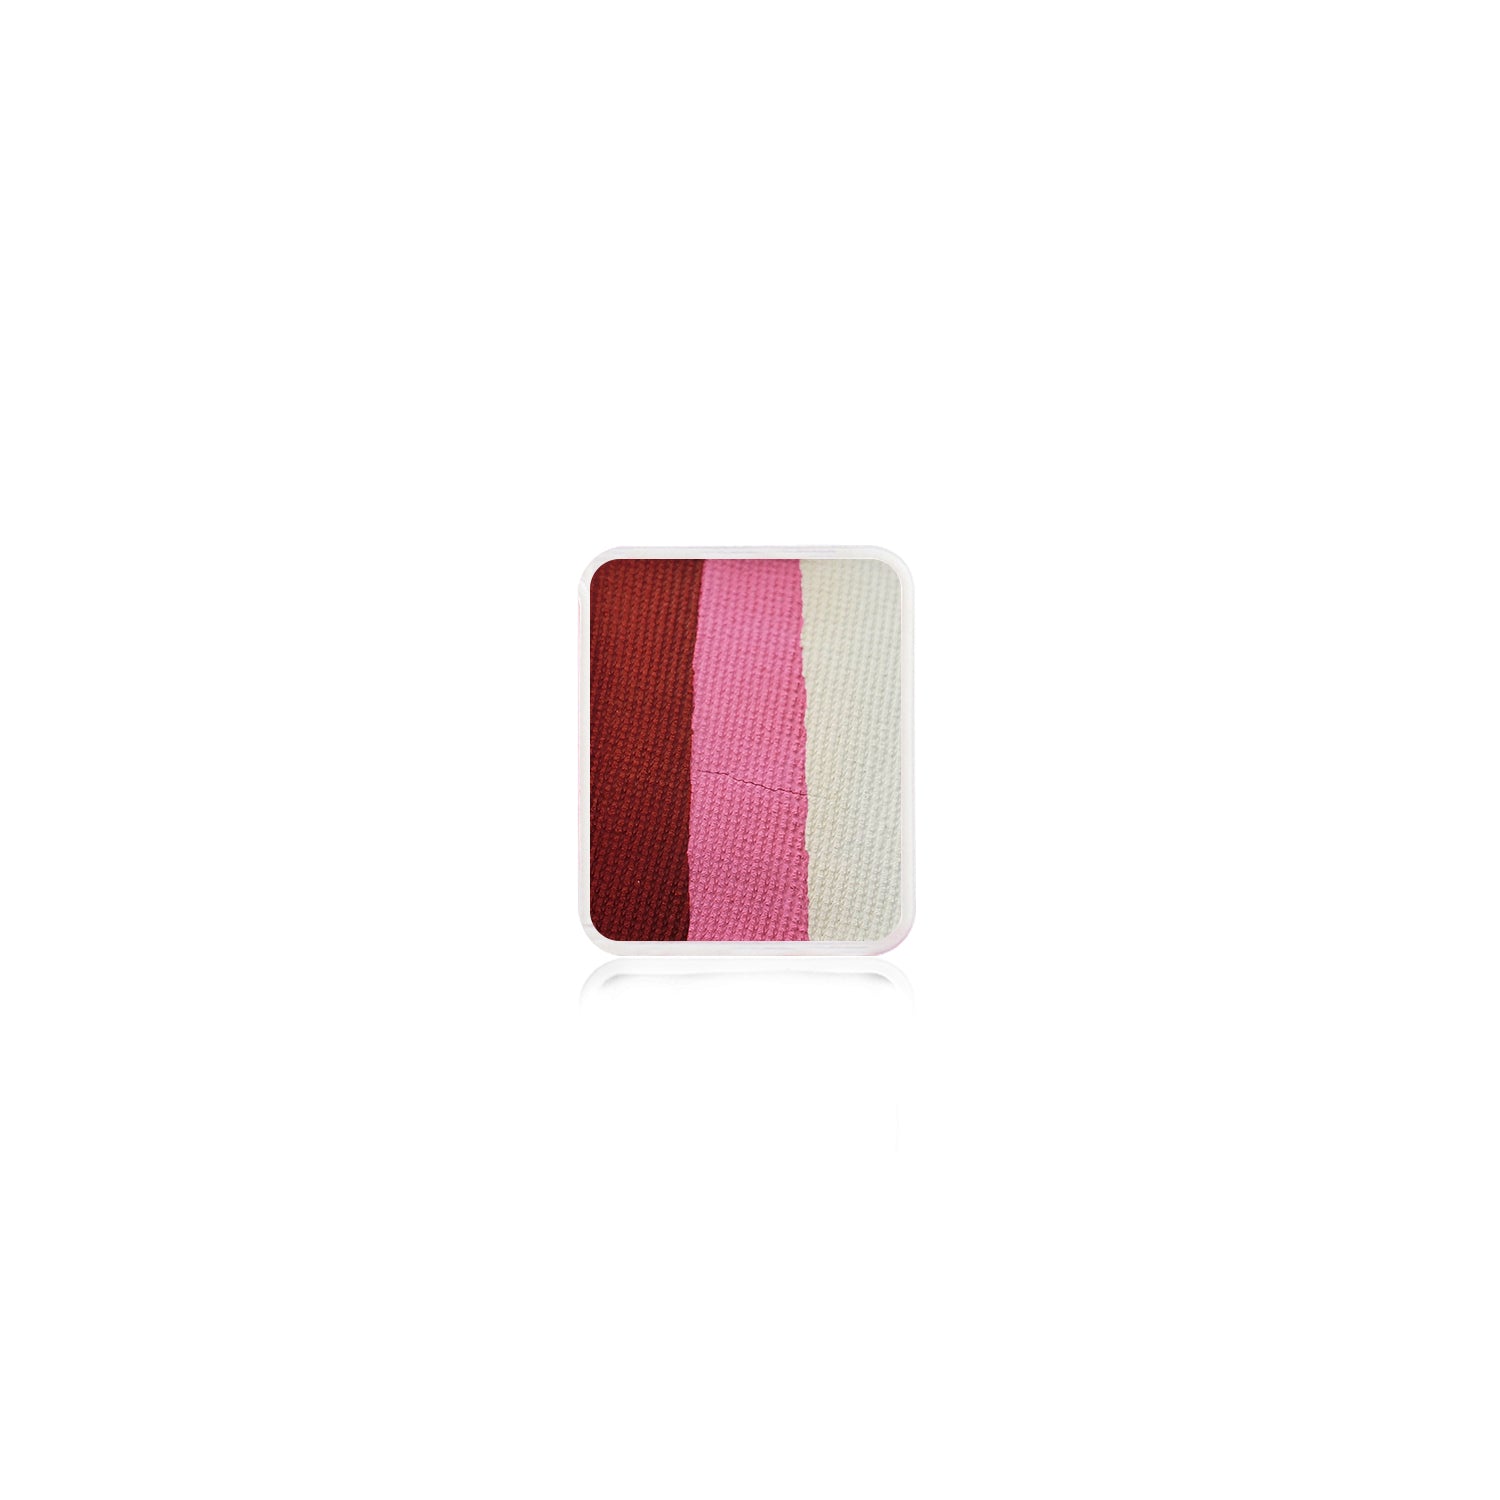 Kraze FX Face Paint Refill - Pink Rose (6 gm)